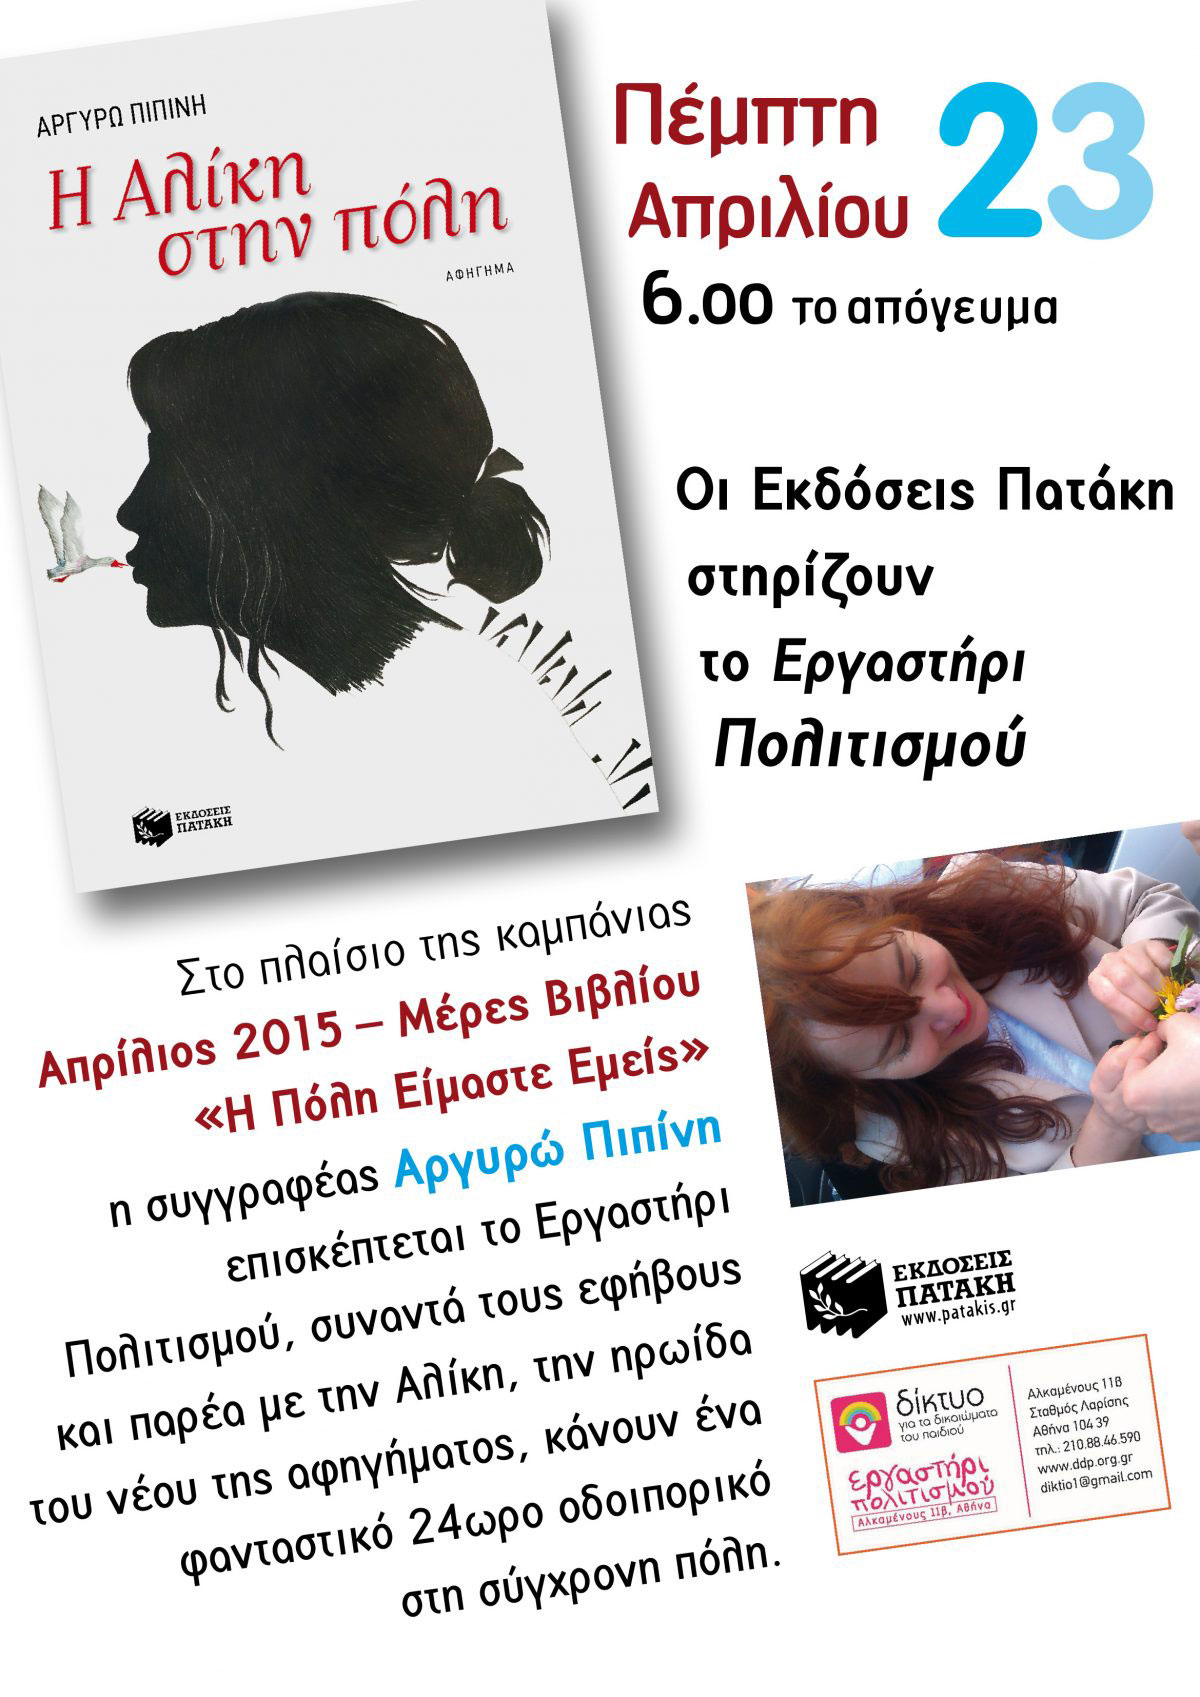 Πέμπτη 23 Απριλίου- 6.00 το απόγευμα- Η Αλίκη στην πόλη- Αργυρώ Πιπίνη- Οι Εκδόσεις Πατάκη στηρίζουν το Εργαστήρι Πολιτισμού